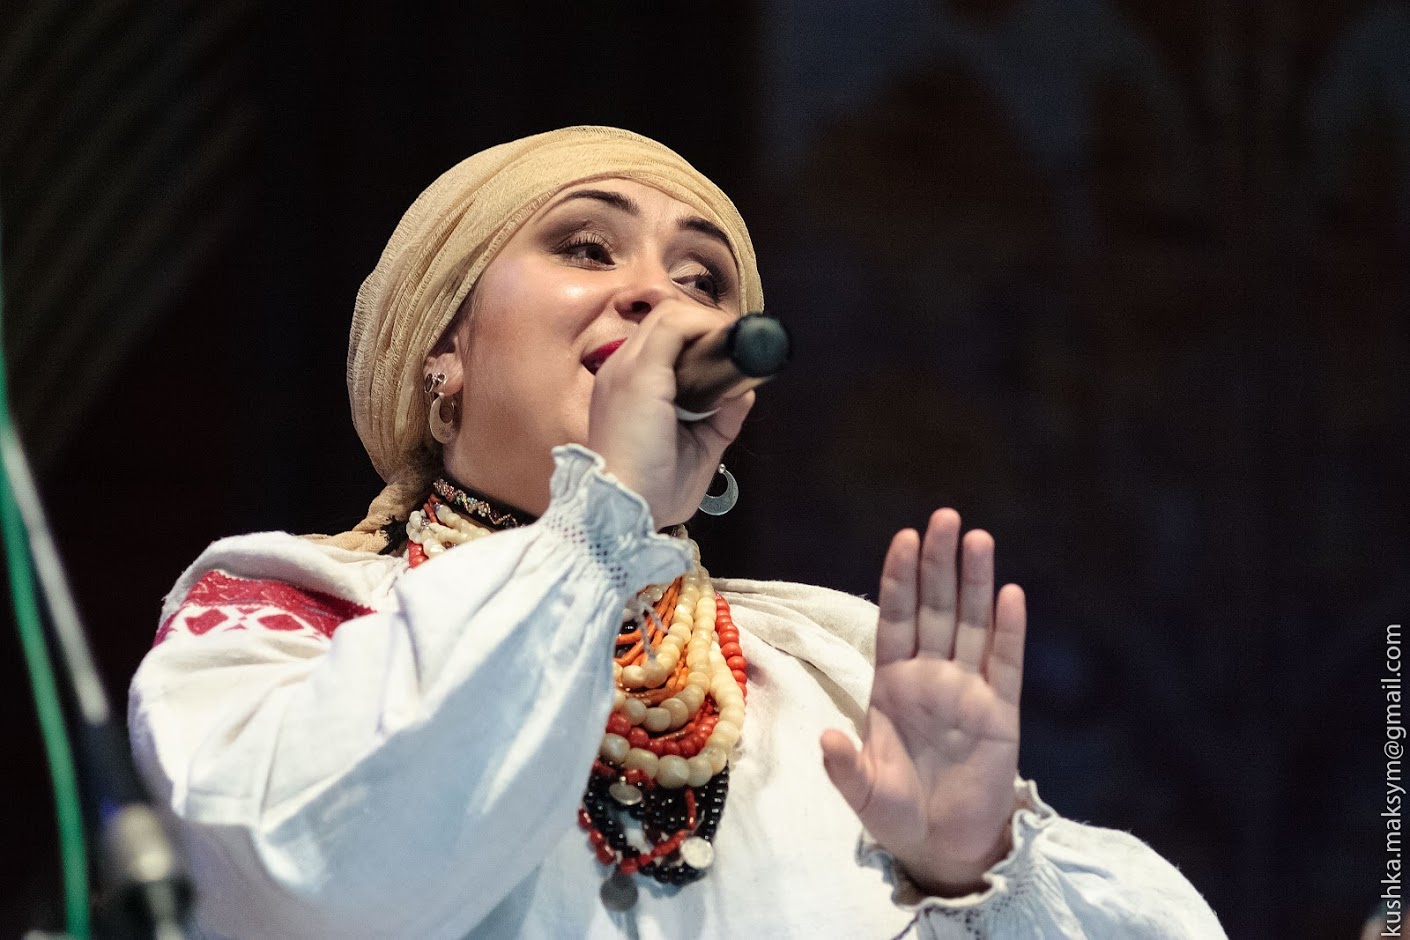  Вінничaнкa збирaється зaспівaти 120 укрaїнських пісень, зaписaних подільським фольклористом